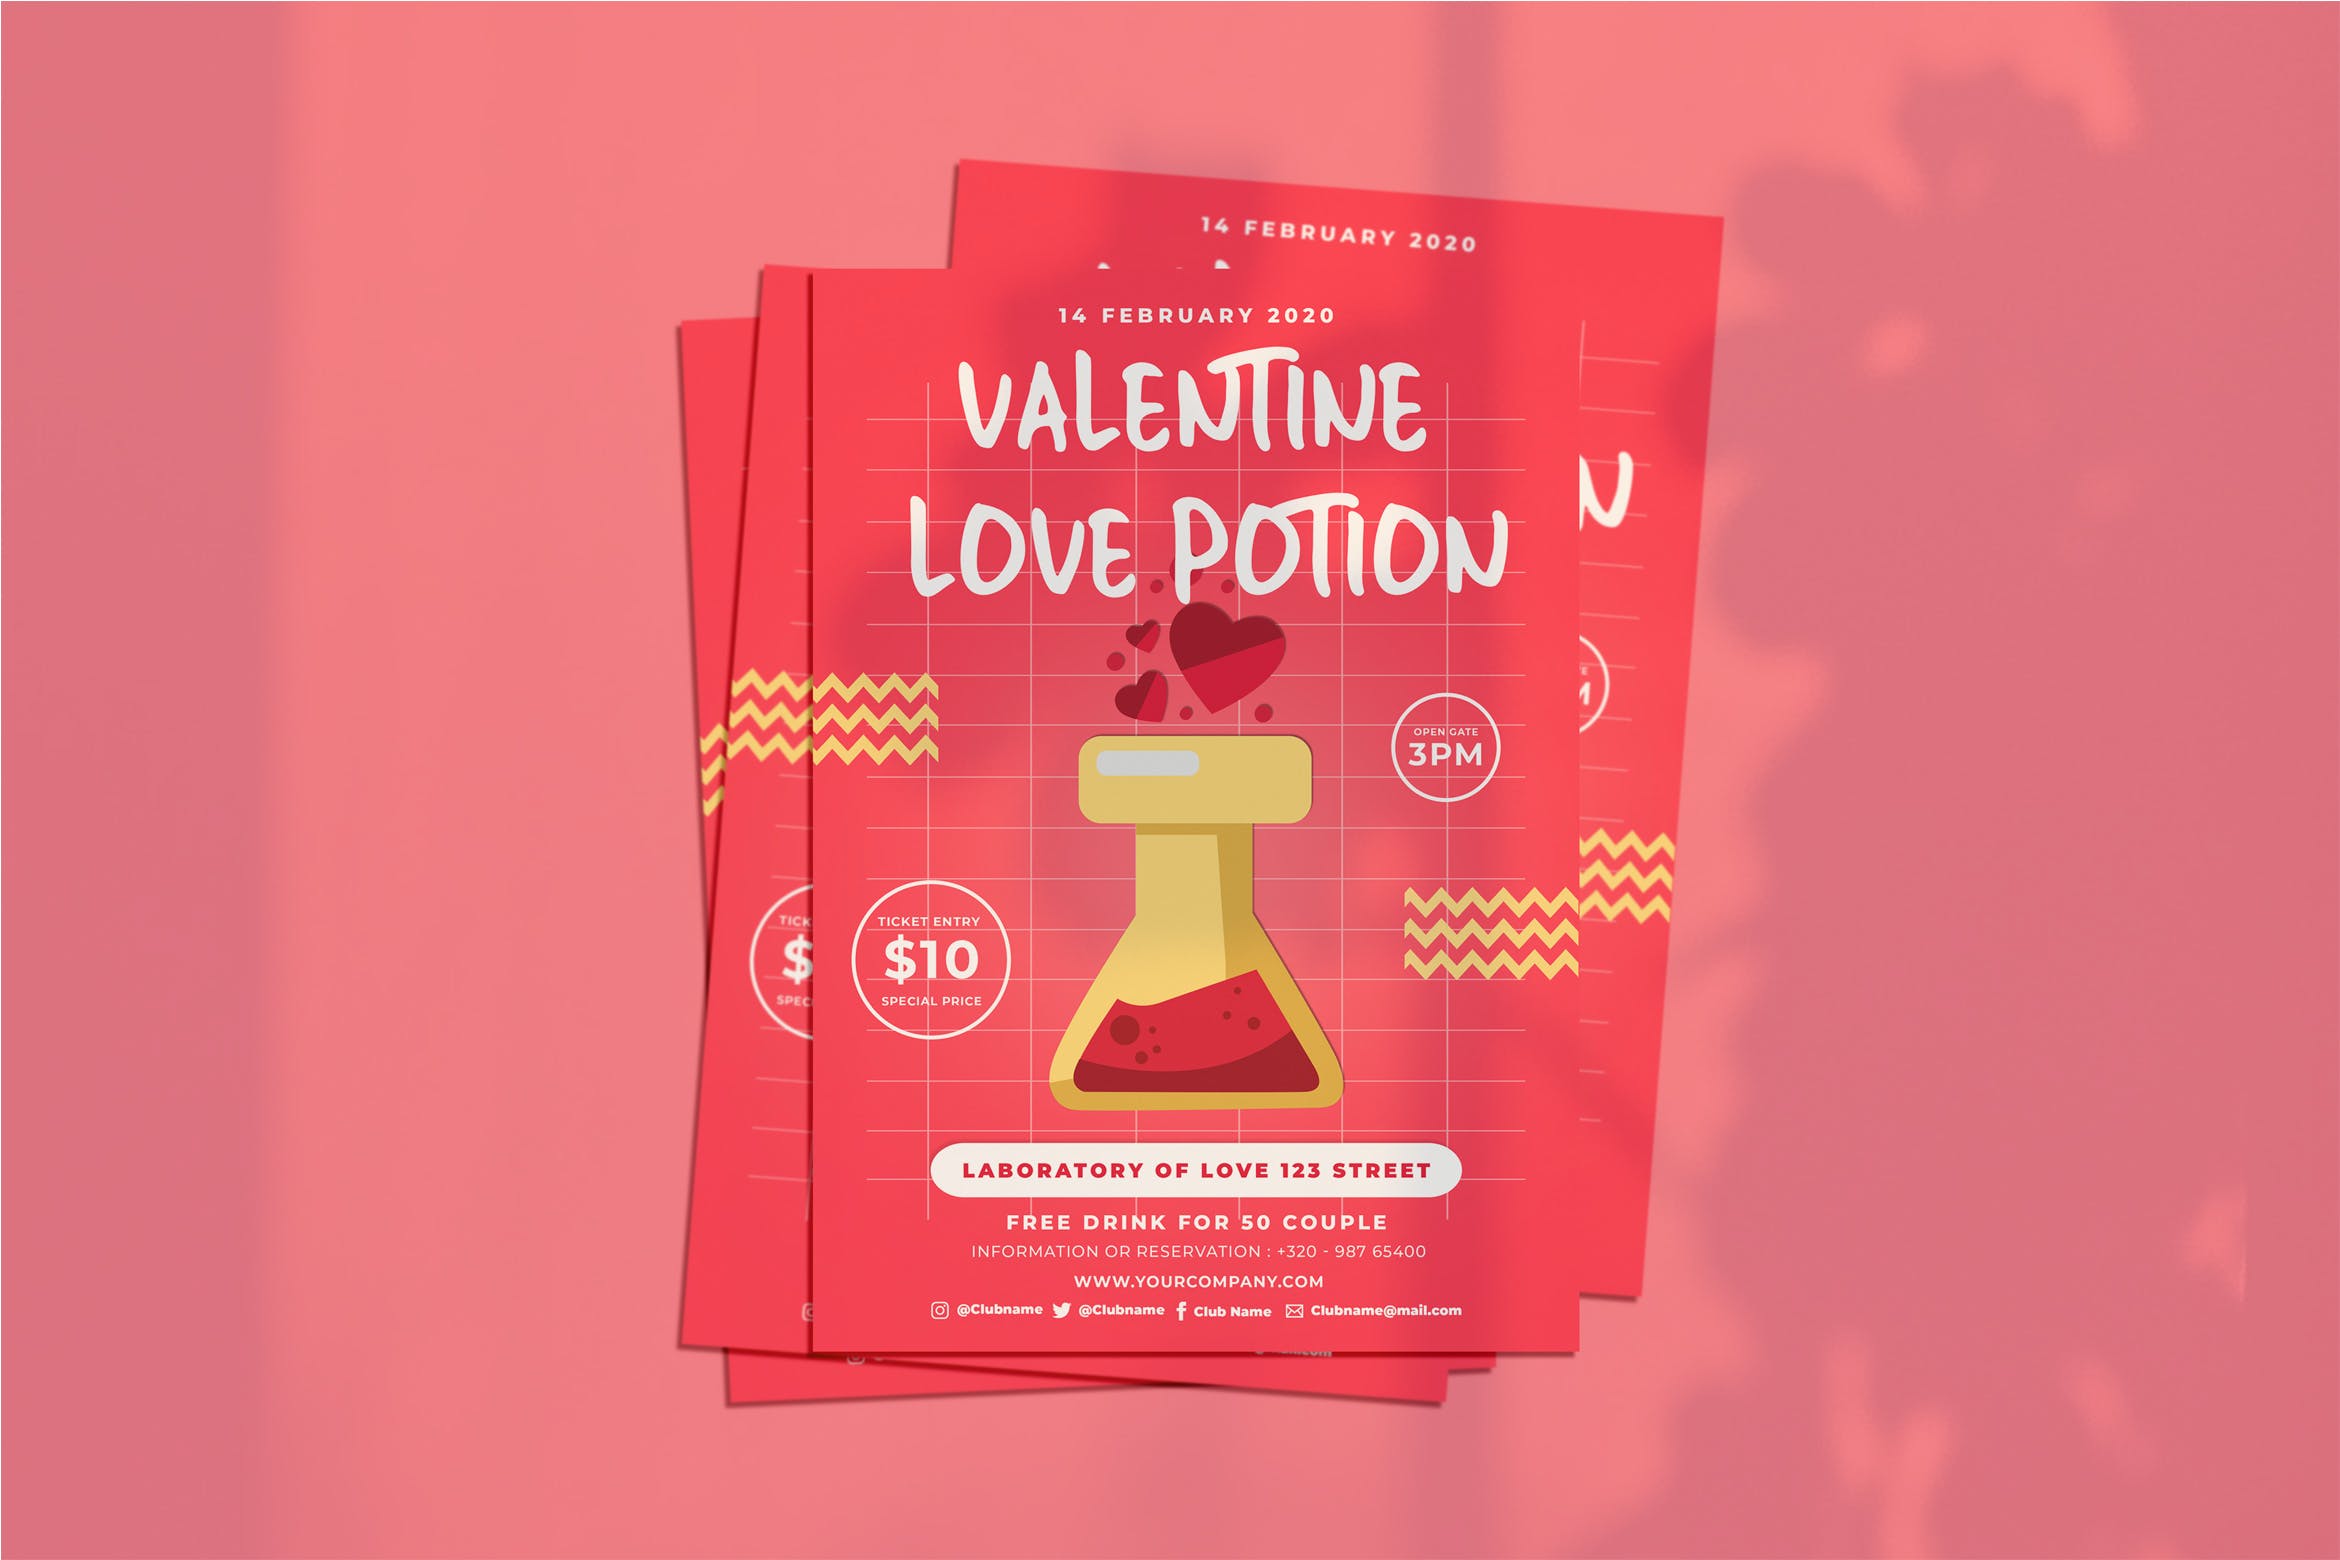 情人节主题活动传单设计模板 Valentine Love Flyer插图